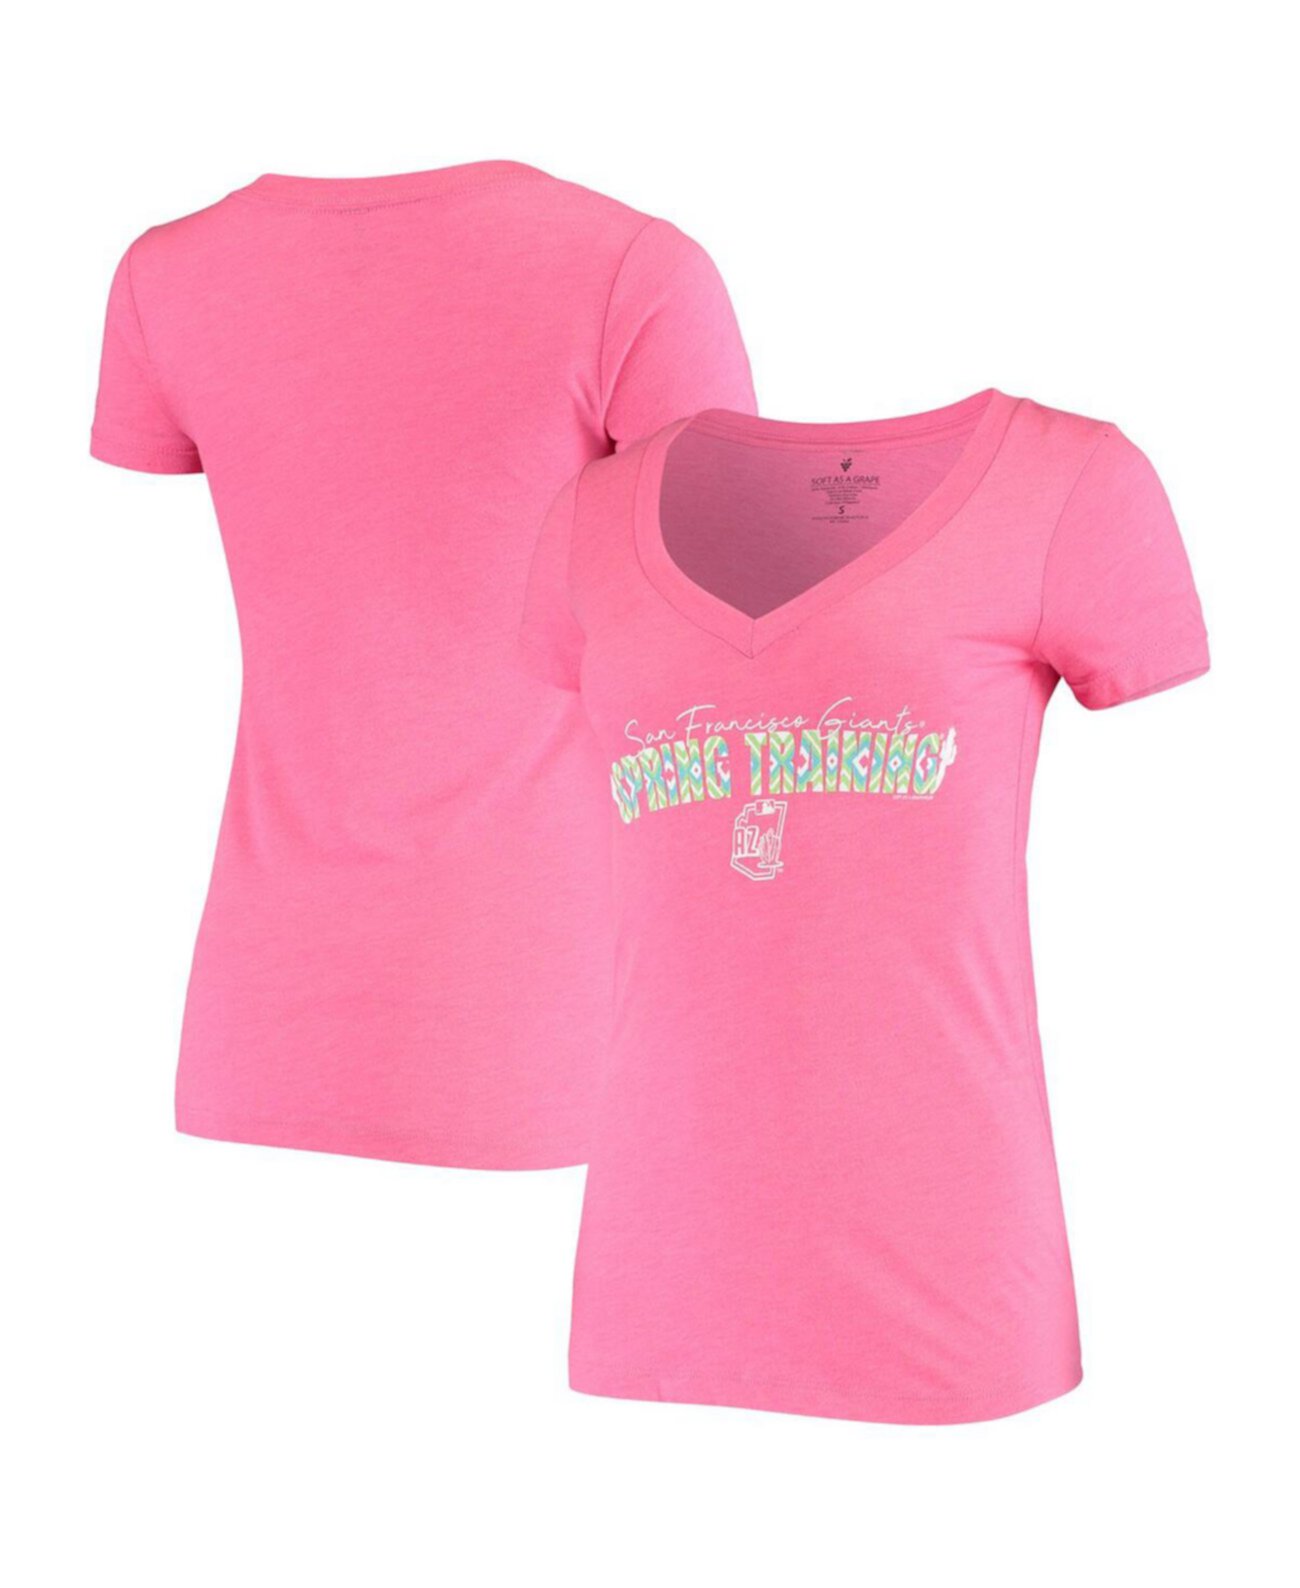 Женская розовая футболка San Francisco Giants Spring Training Circle Ribbon с v-образным вырезом Tri-Blend Soft As A Grape